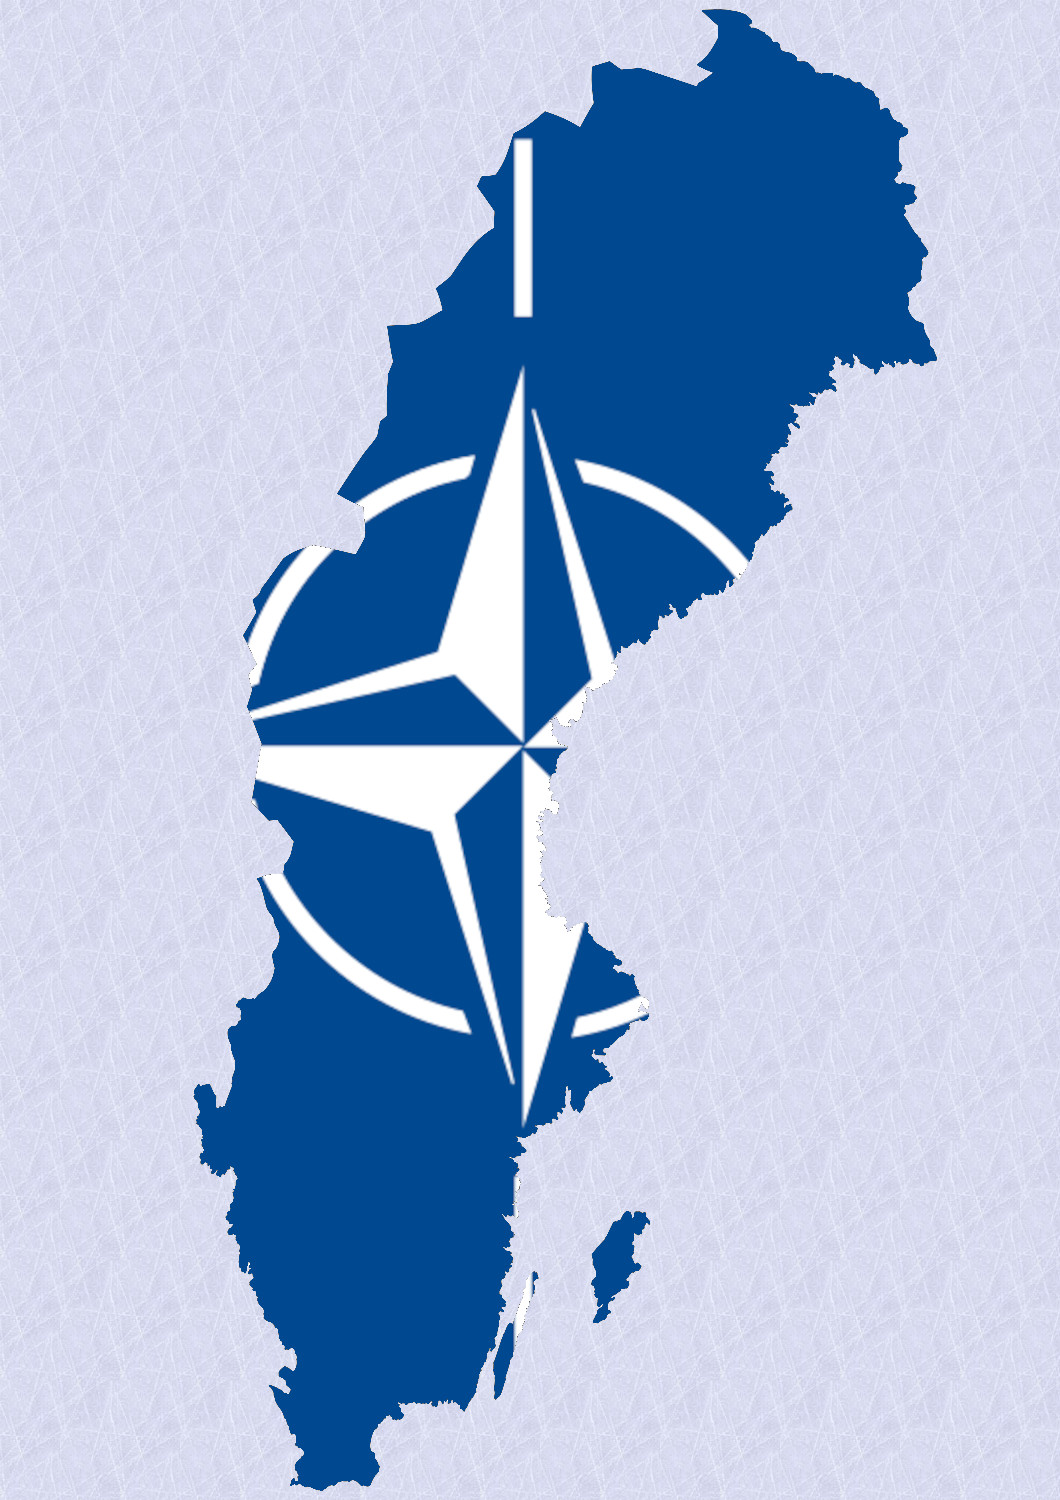 Yorum: İsveç’in NATO’ya katılımı Rusya’dan düşmanlık teşvik edebilir.